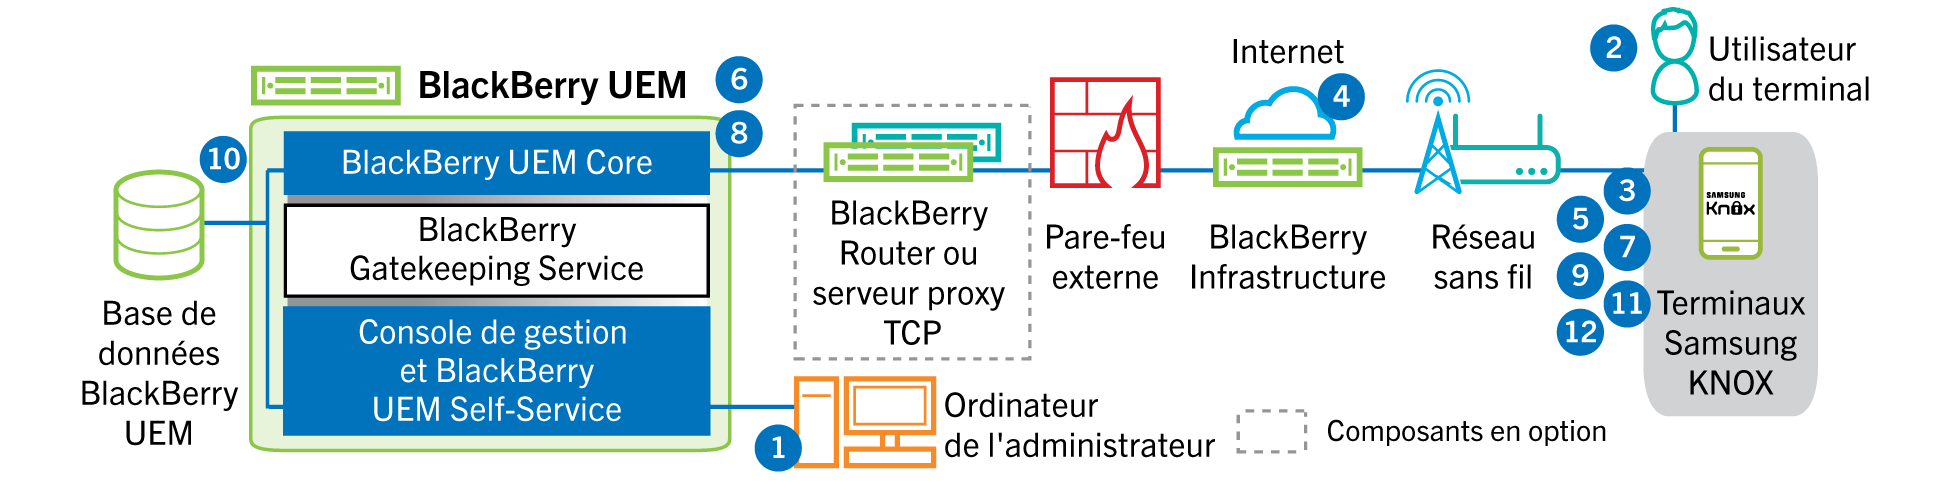 Schéma illustrant les étapes et les composants mentionnés dans le flux de données suivant.